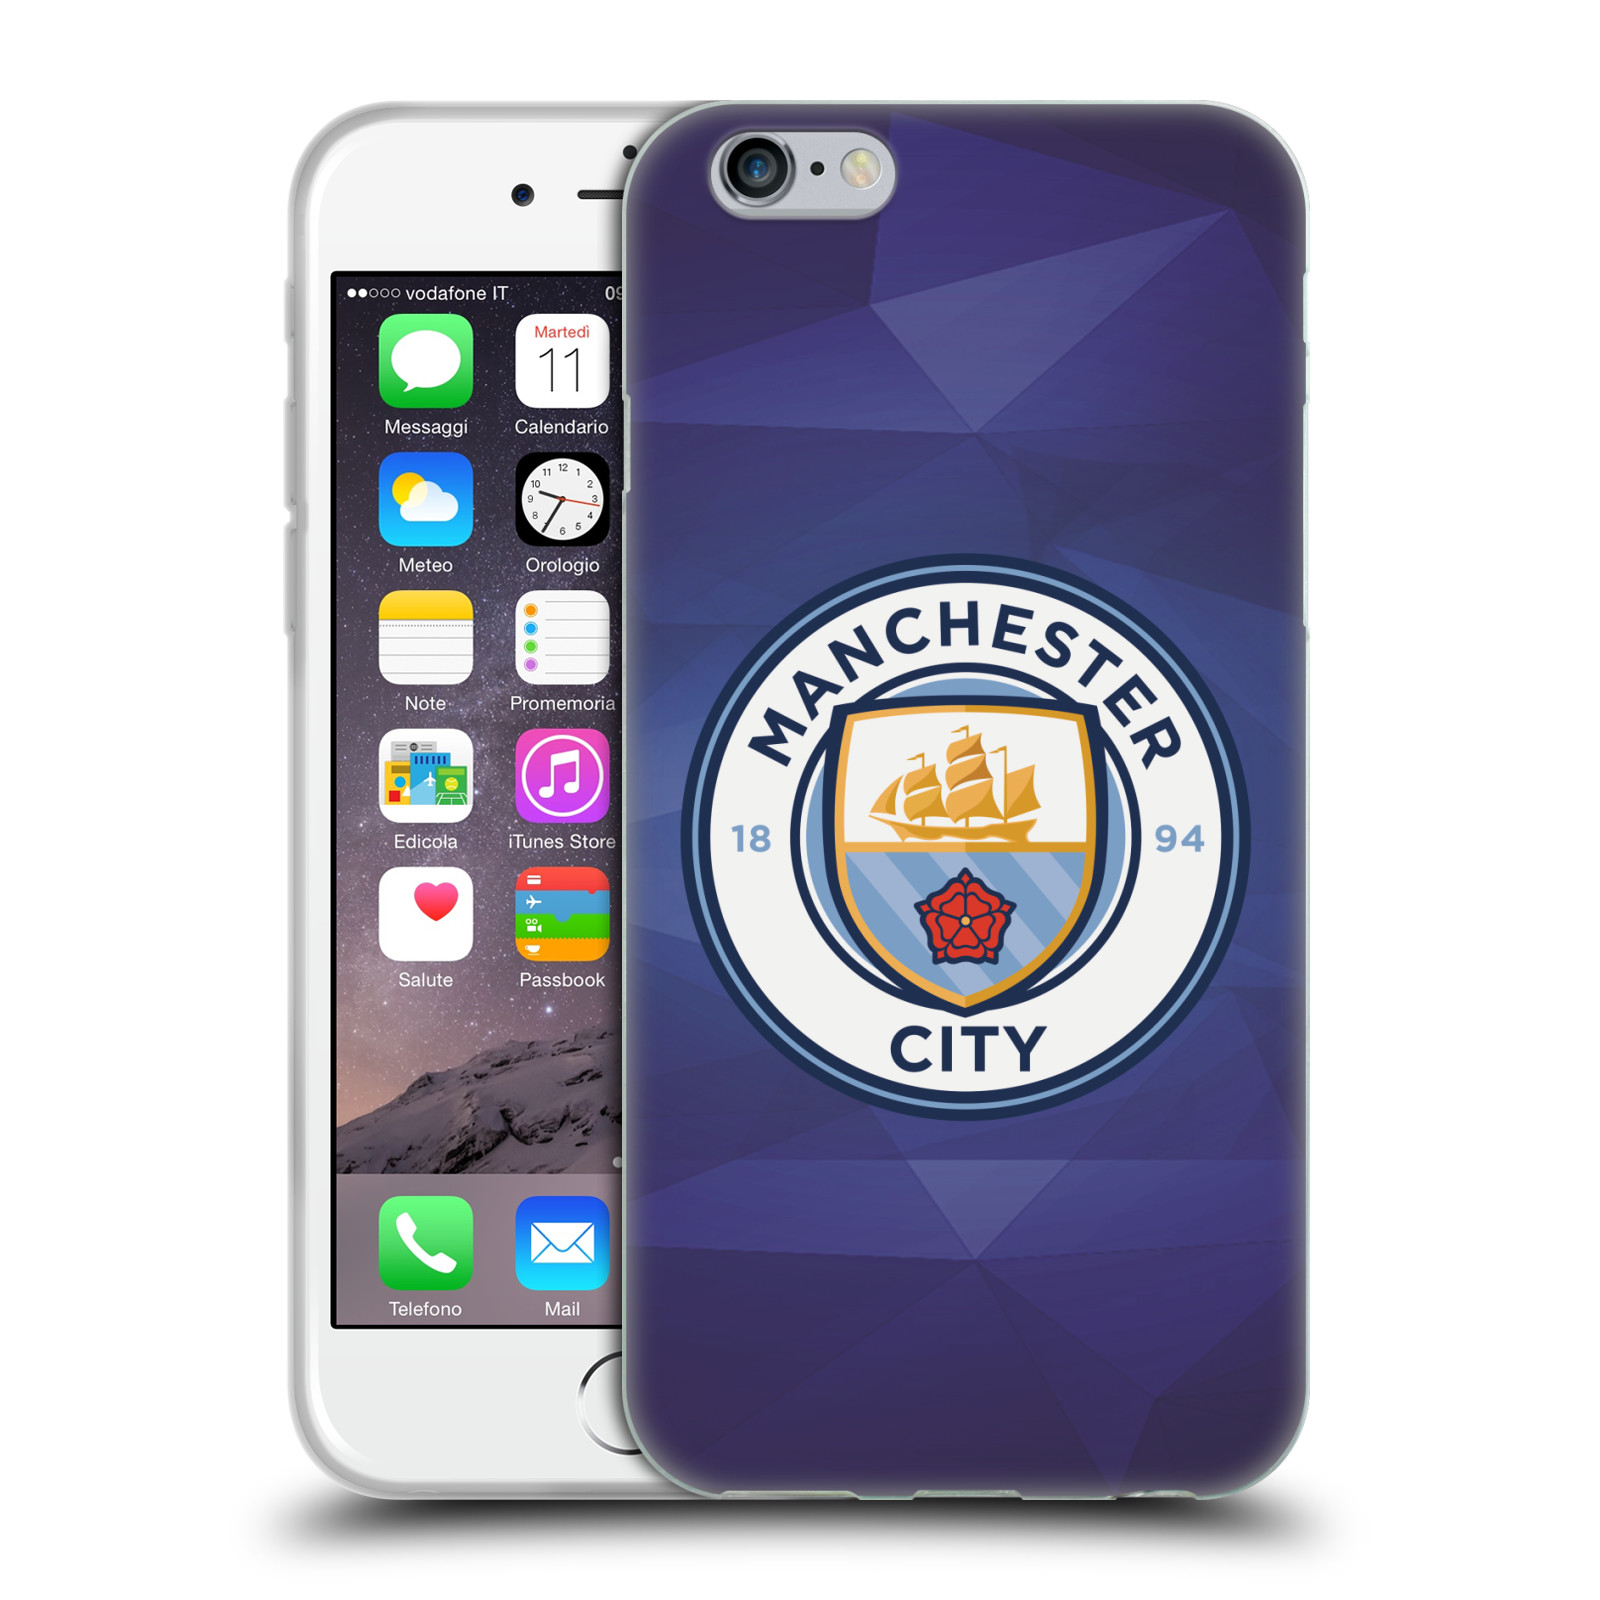 Silikonové pouzdro na mobil Apple iPhone 6 HEAD CASE Manchester City FC - Modré nové logo (Silikonový kryt či obal na mobilní telefon licencovaným motivem Manchester City FC pro Apple iPhone 6)